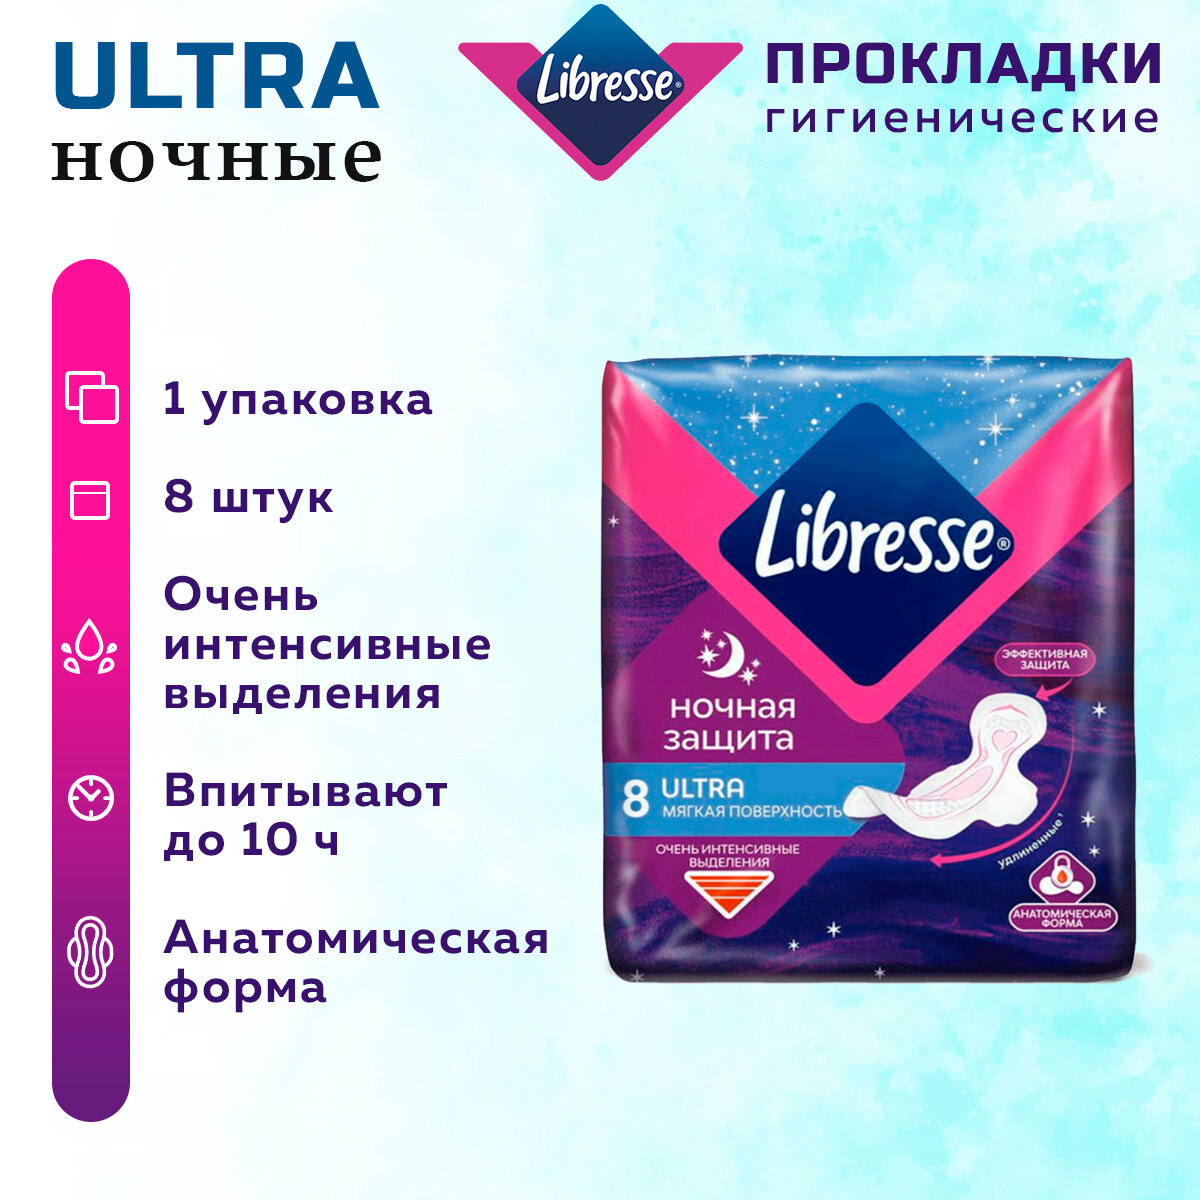 Прокладки Libresse Ultra ночные 16шт Эссиэй хайджин - фото №4